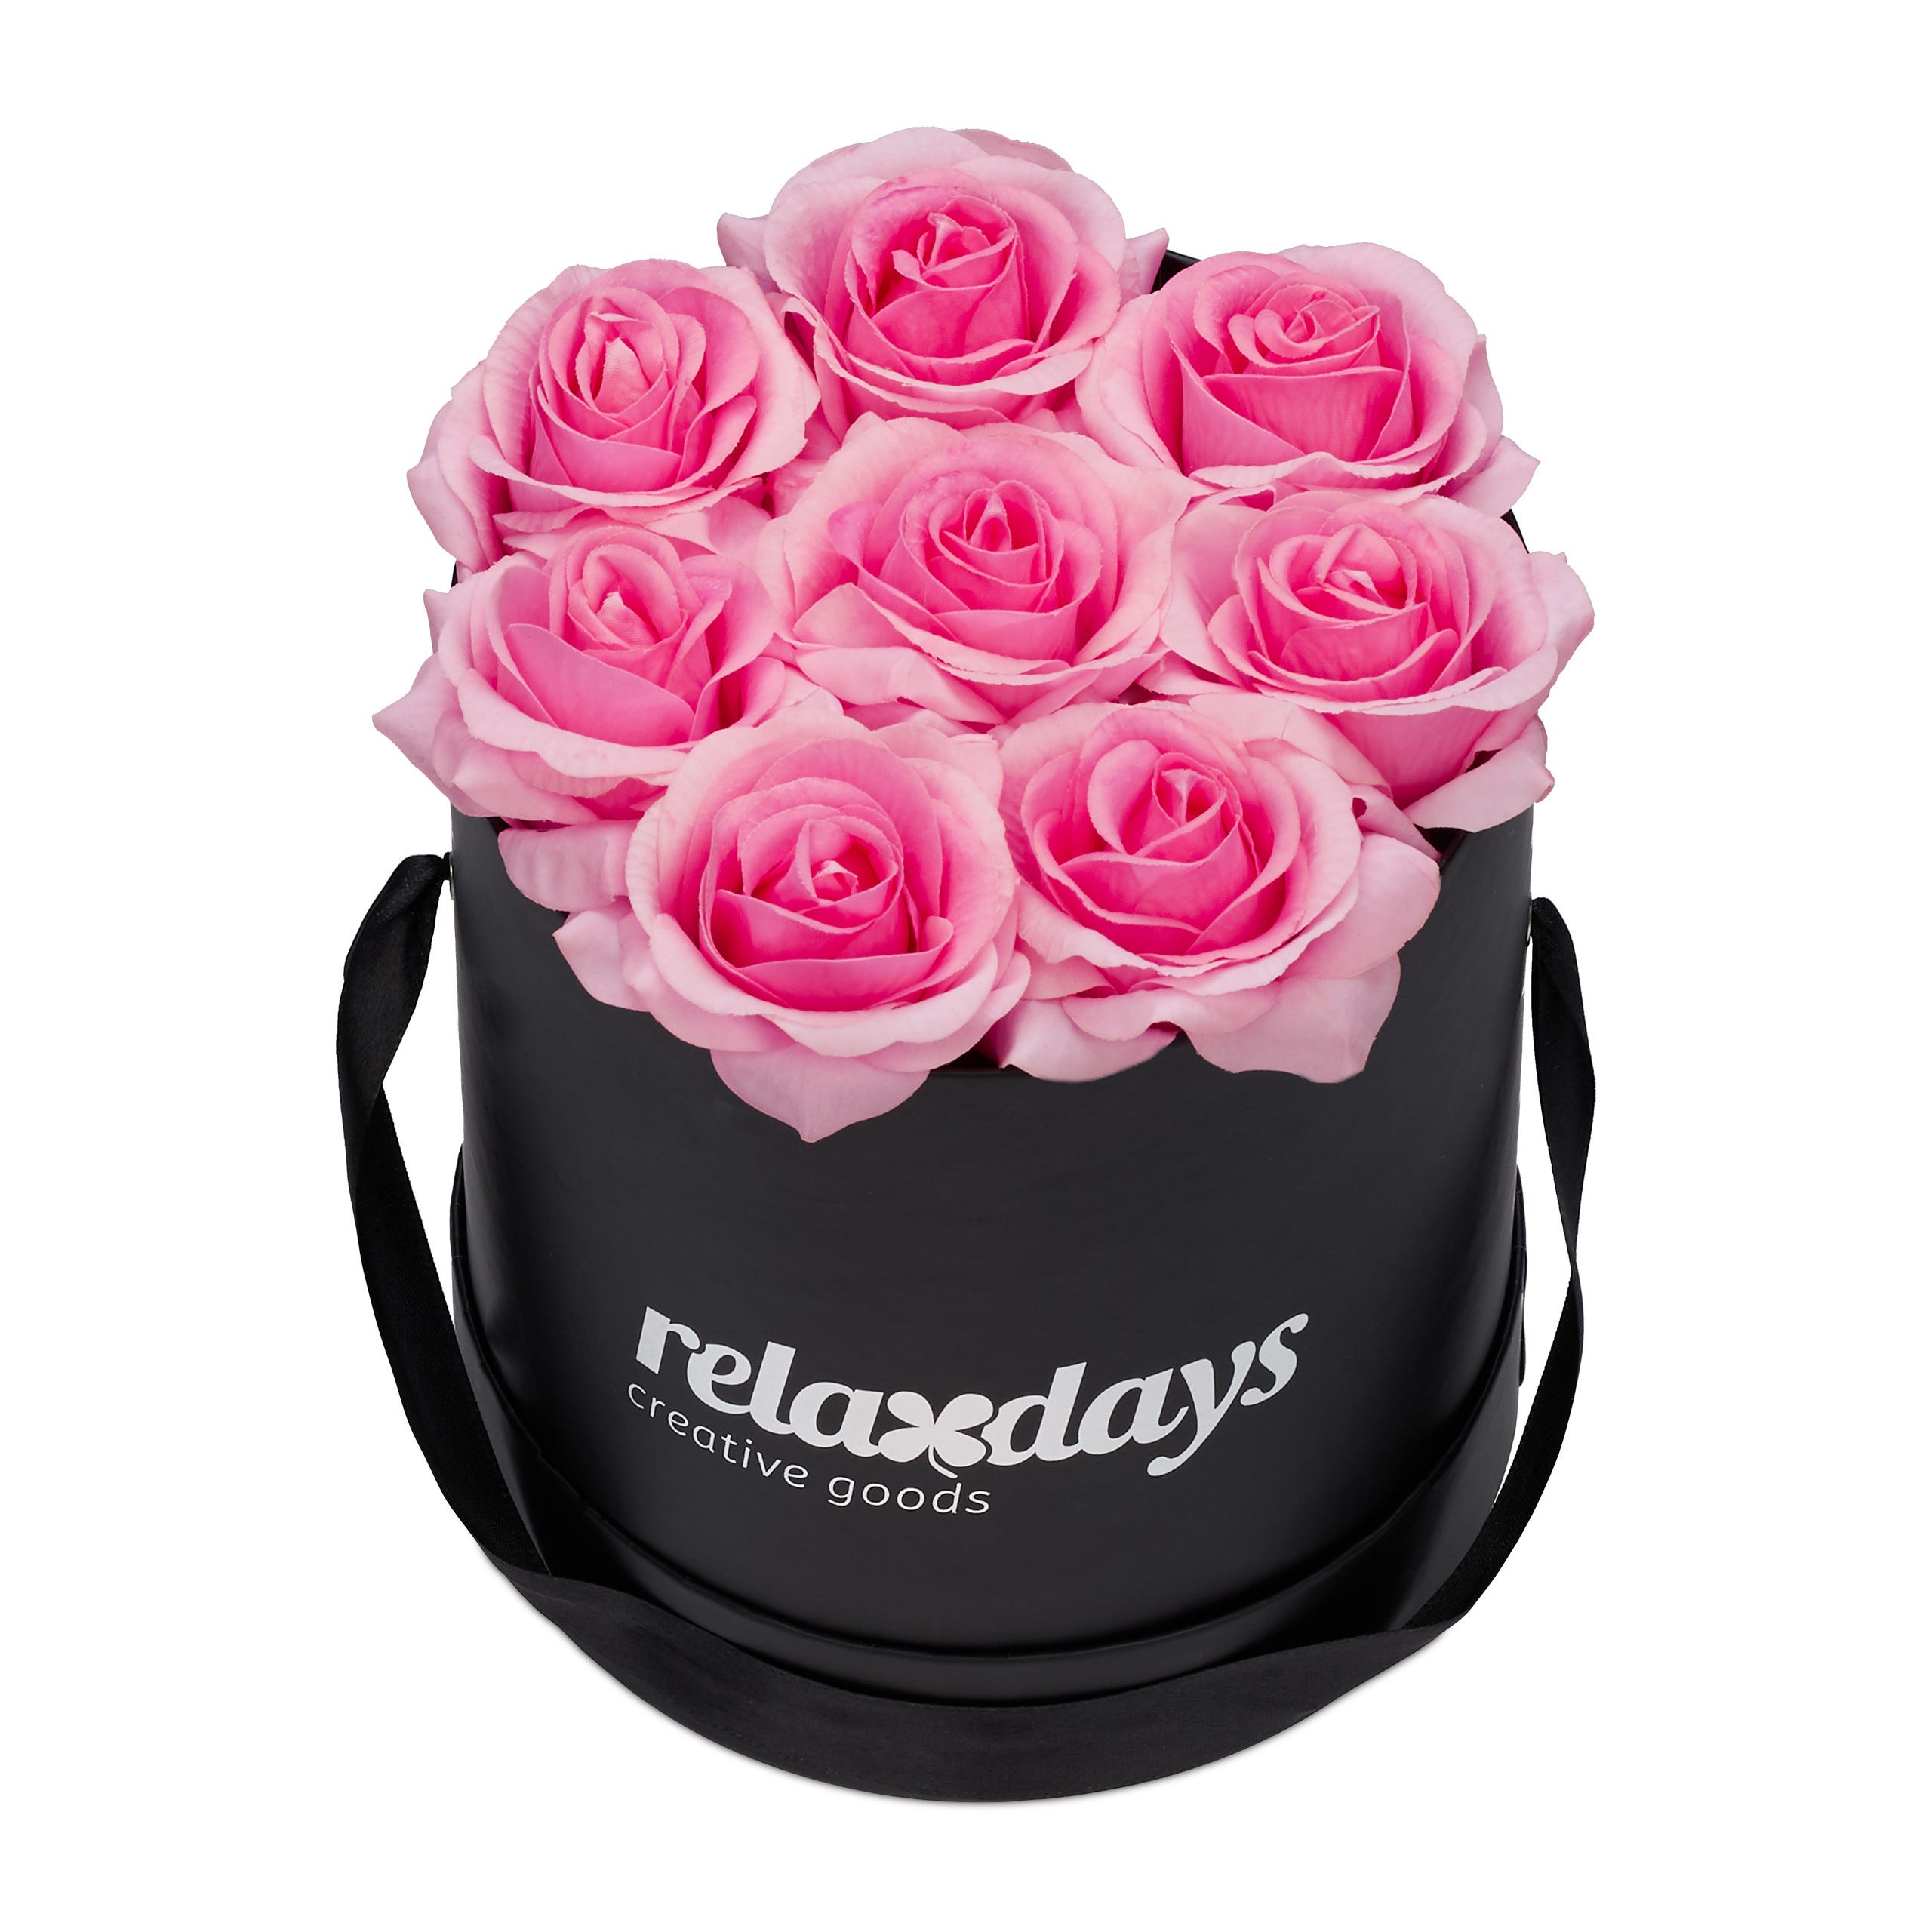 Relaxdays Boîte à roses ronde, 8 roses, Bac à roses noir, conservable 10  ans, Idée cadeau, rose